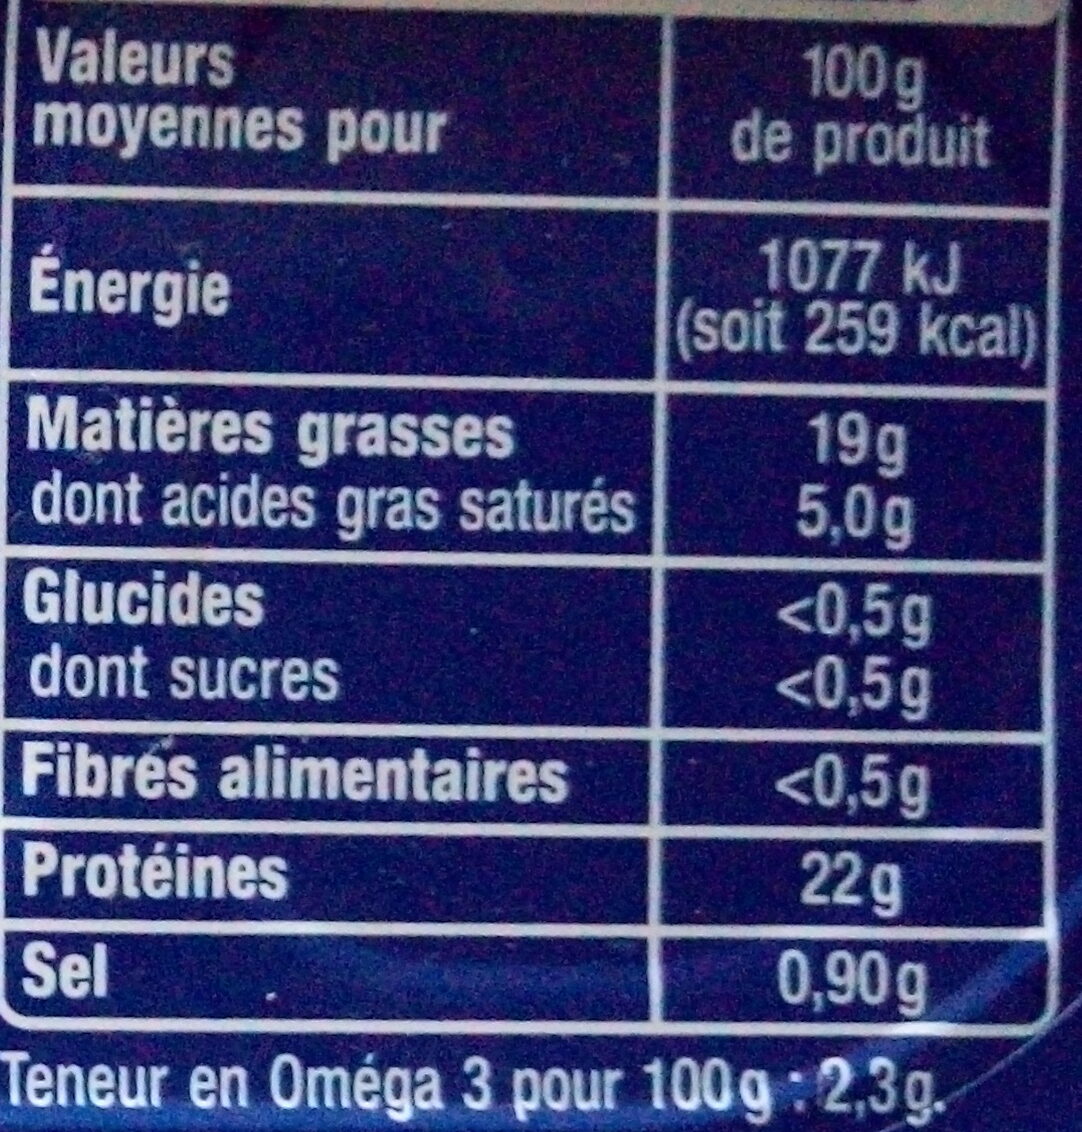 Filets de maquereaux nature cuisson vapeur - Nutrition facts - fr